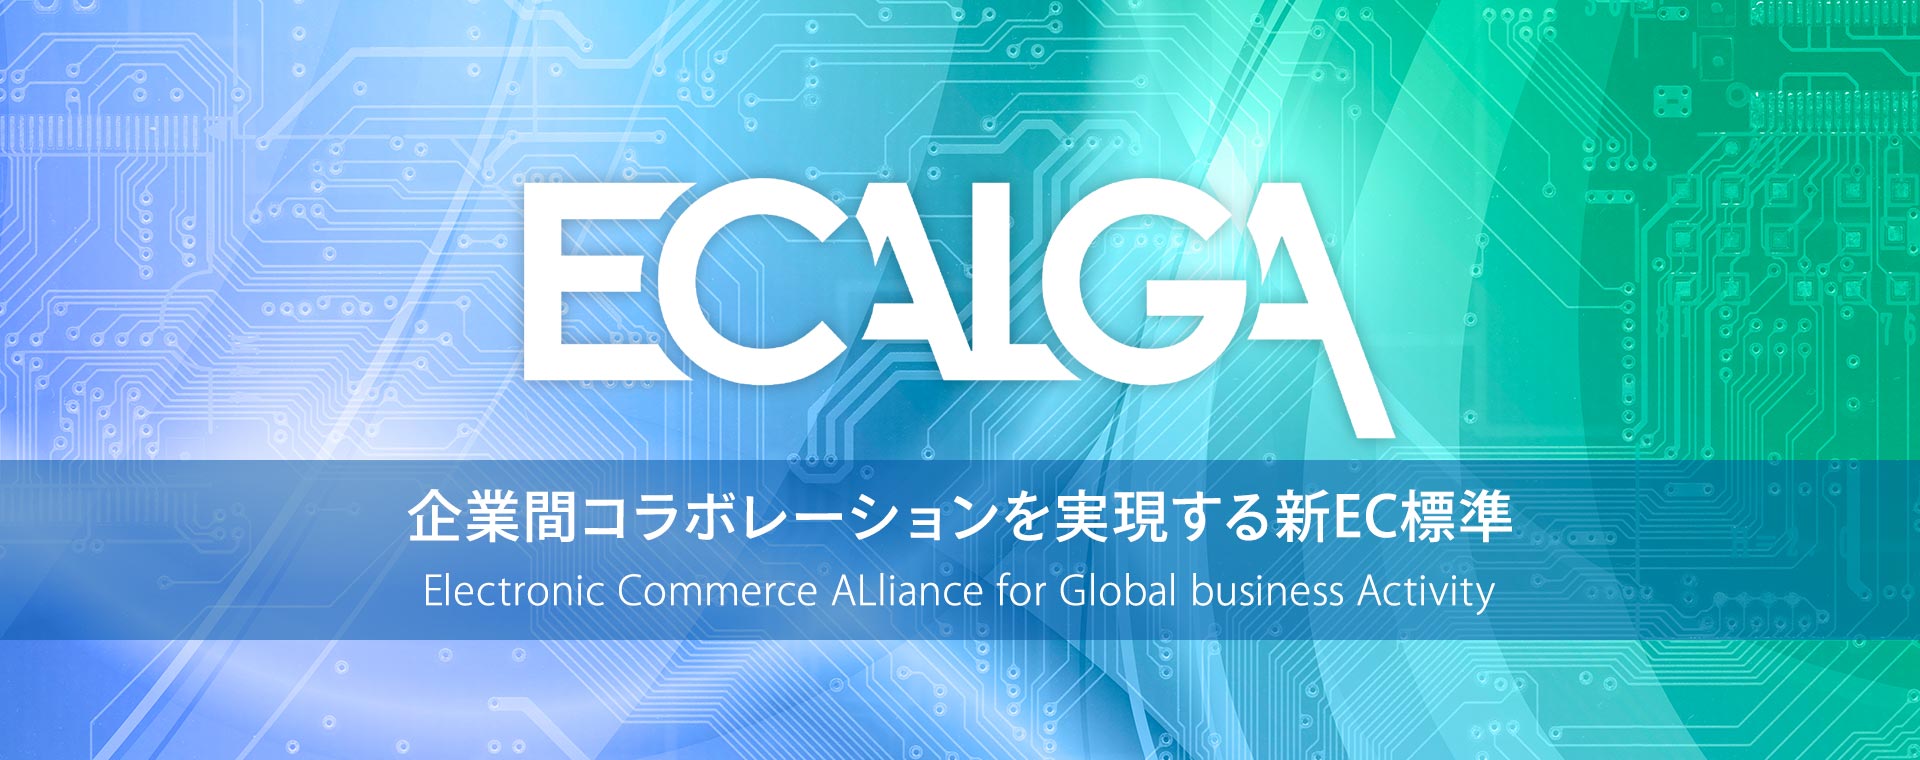 ECALGA：企業間コラボレーションを実現する新EC標準